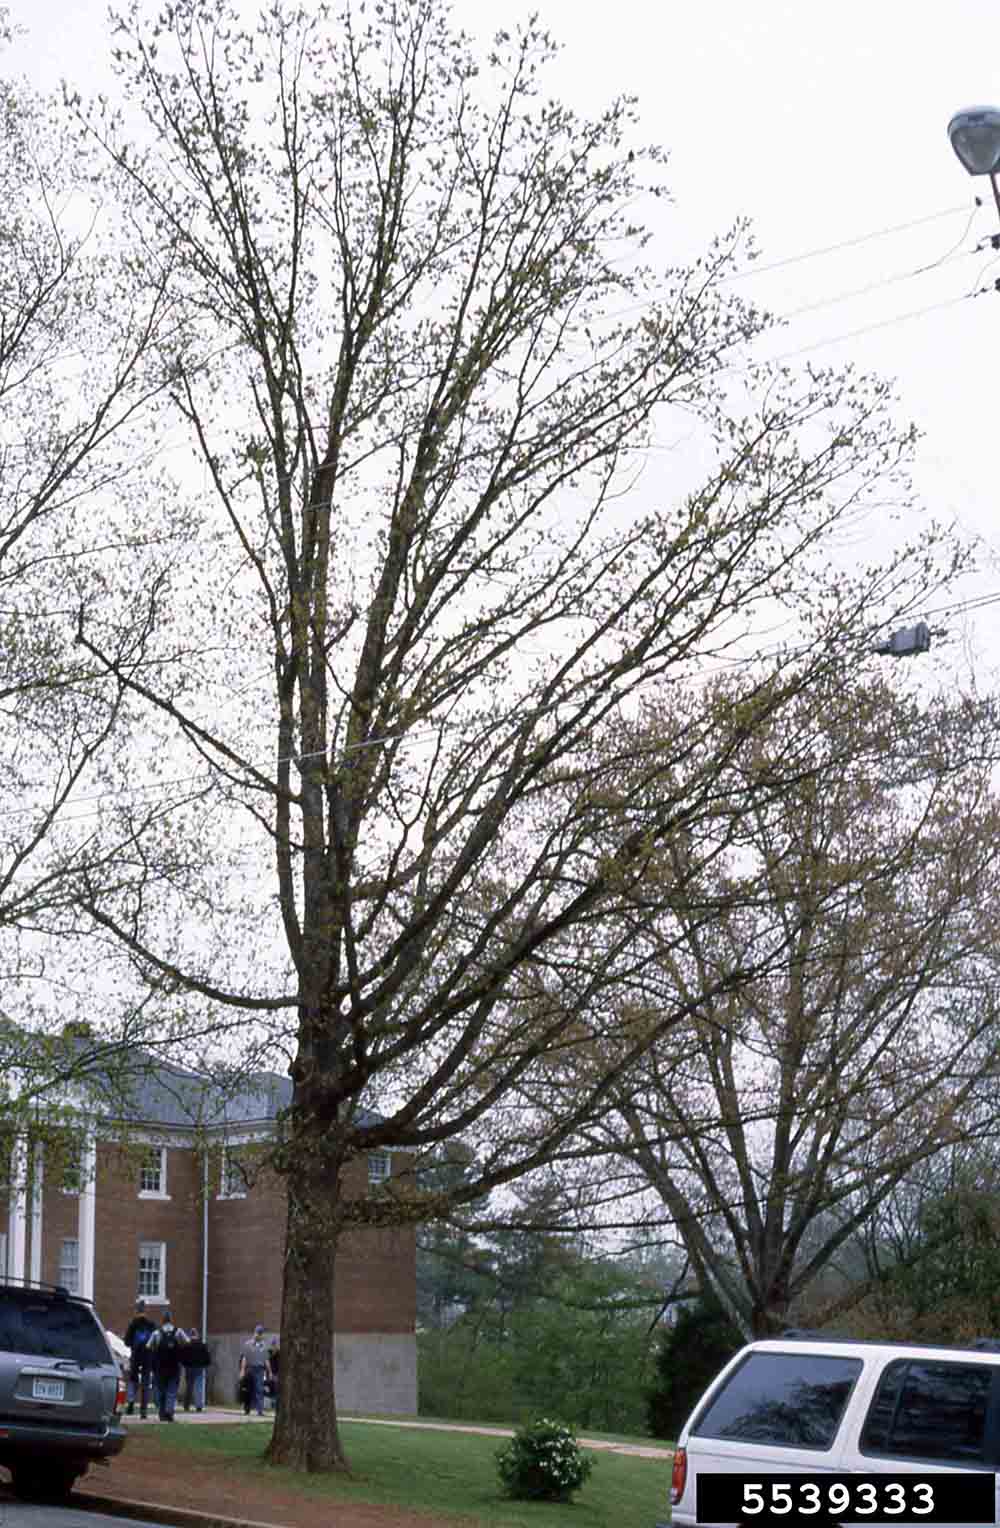 Post oak tree habit, winter